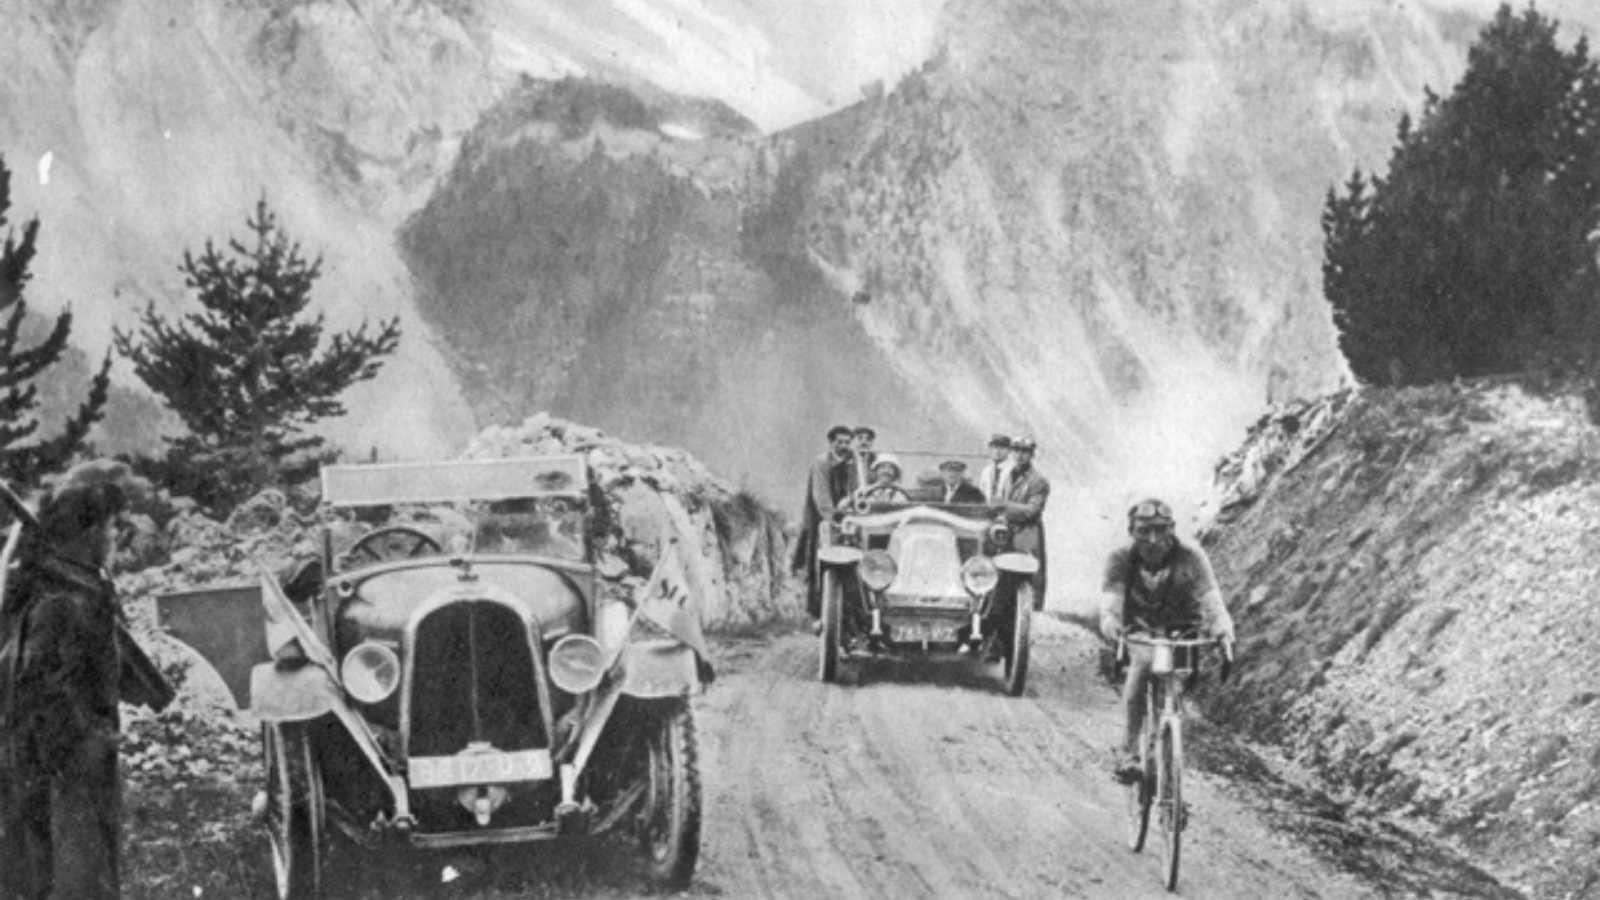 Ottavio Bottecchia on the Col d'Izoard in 13th stage of Tour de France 1925